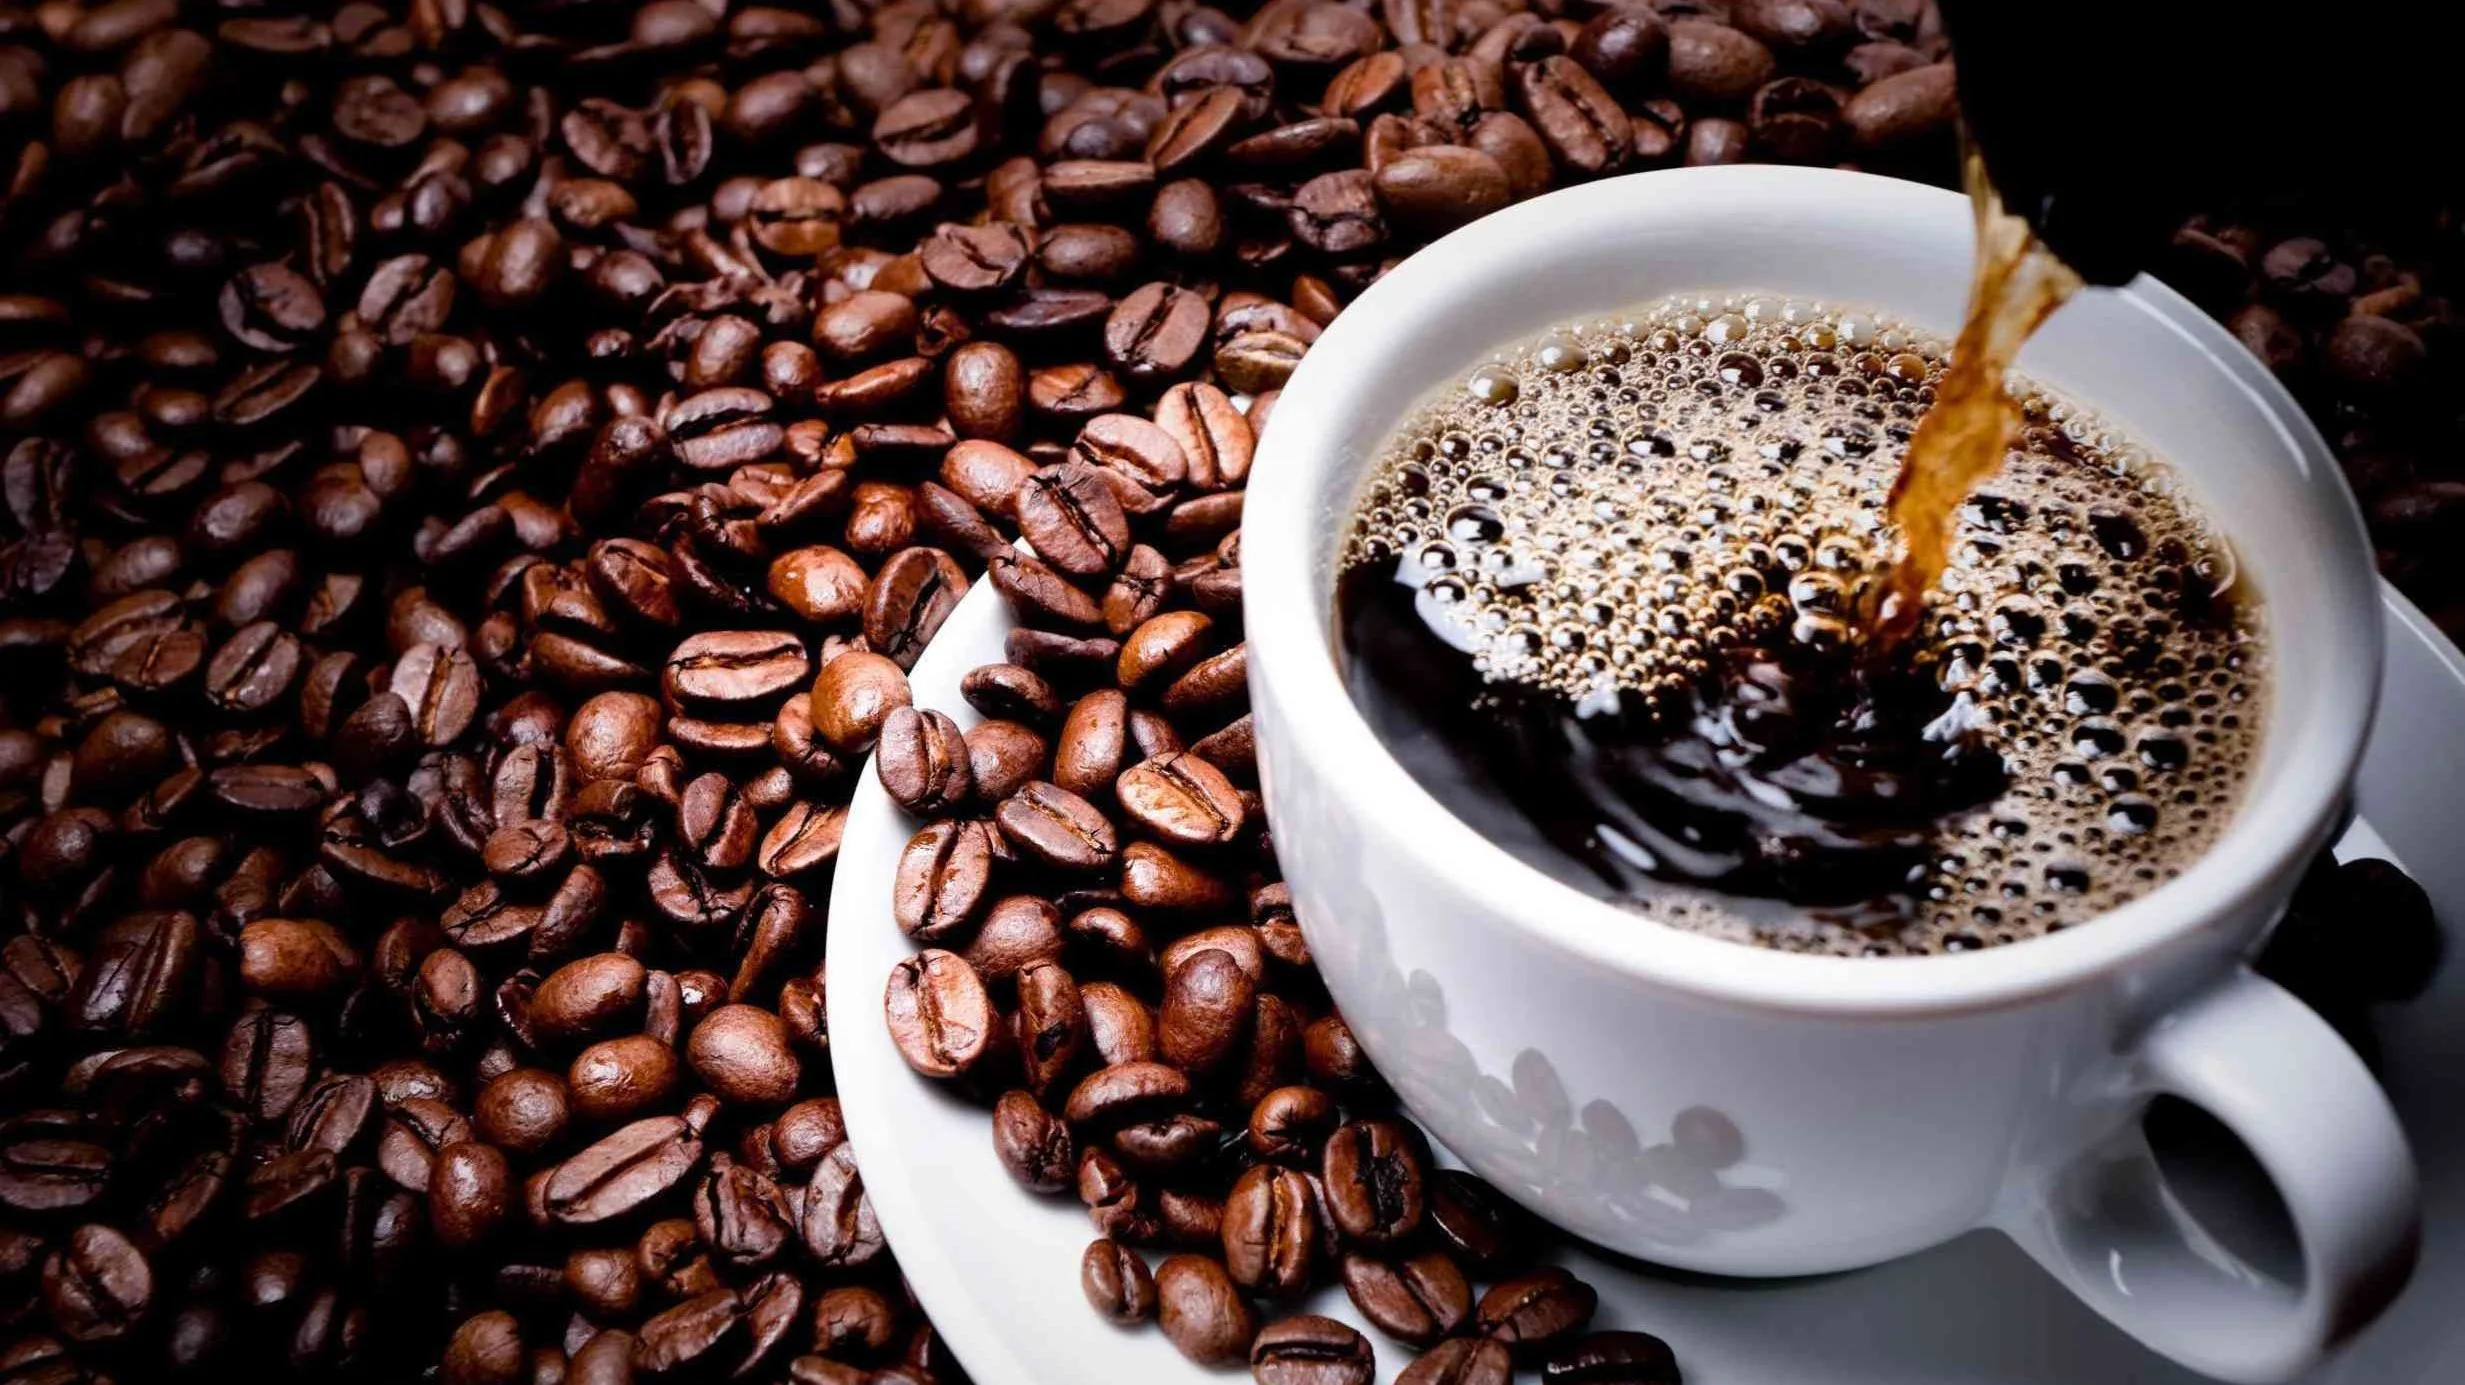 تعرفي على فوائد القهوة المتعددة التي ستجعلها عنصرا مهما في نظامك الغذائي وهل لها أضرار؟